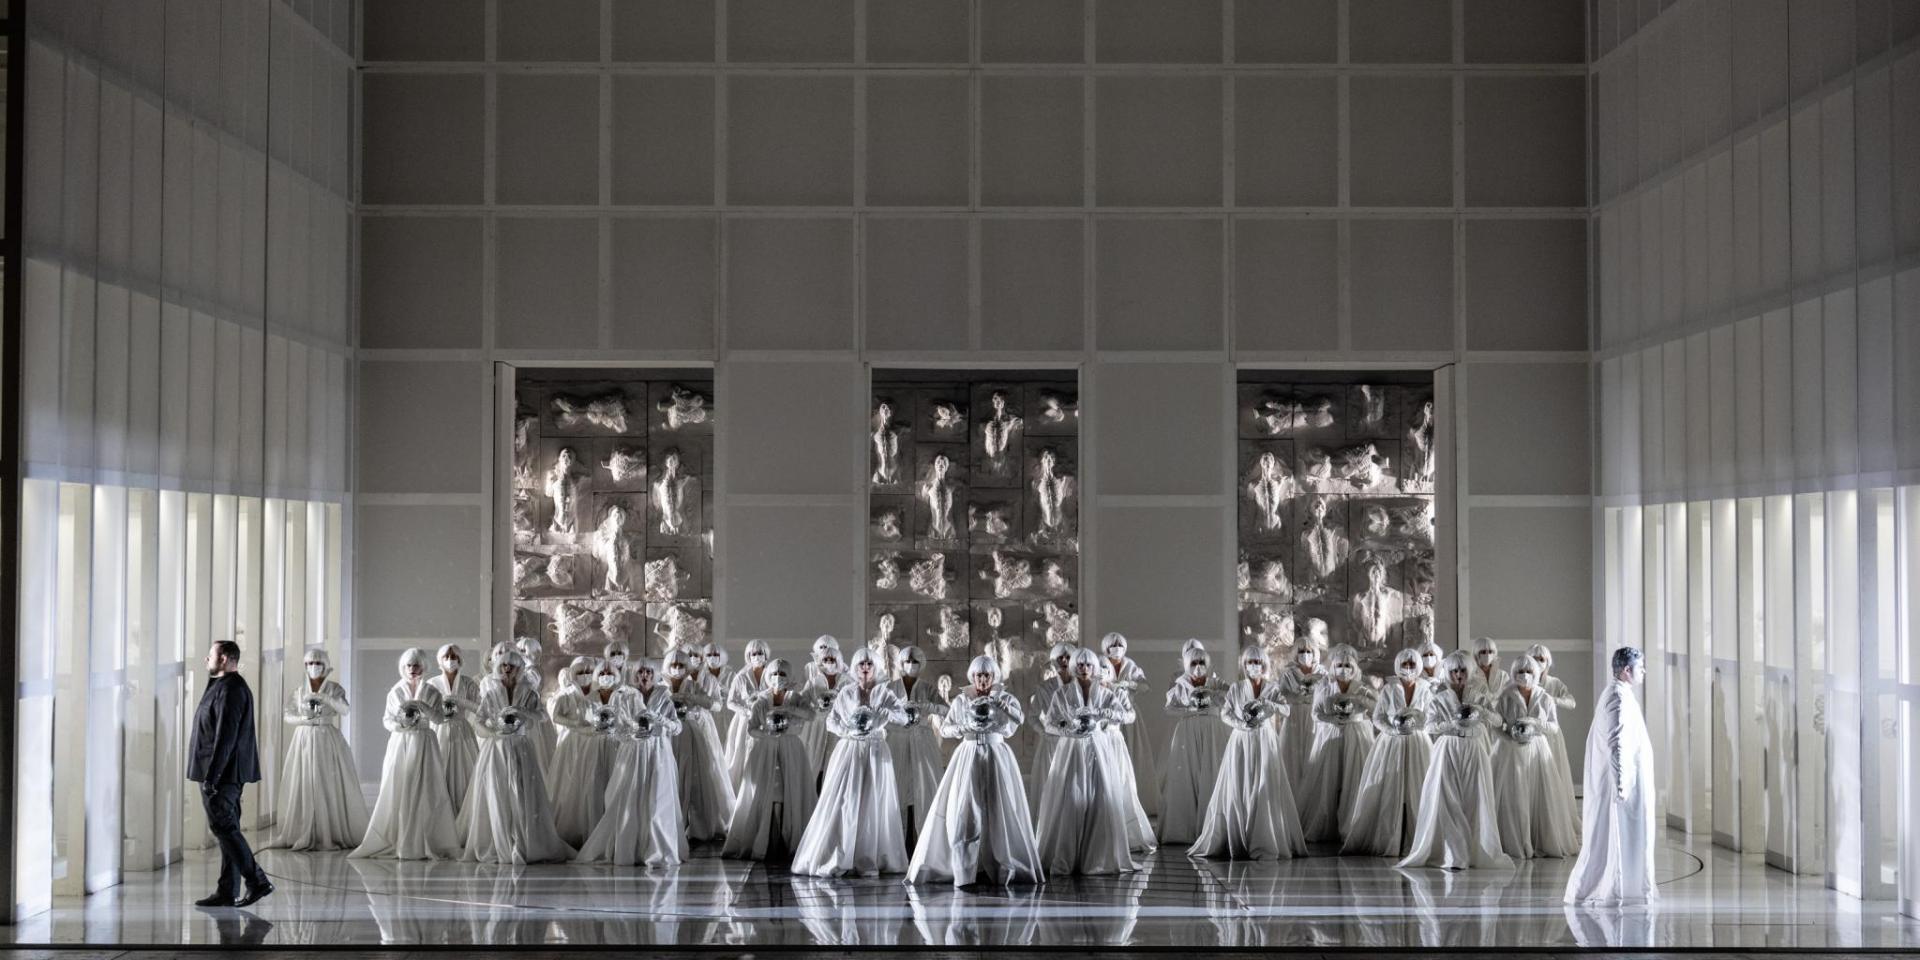 Ingela Brimberg (Turandot) e il Coro Teatro Regio Torino - foto Andrea Macchia